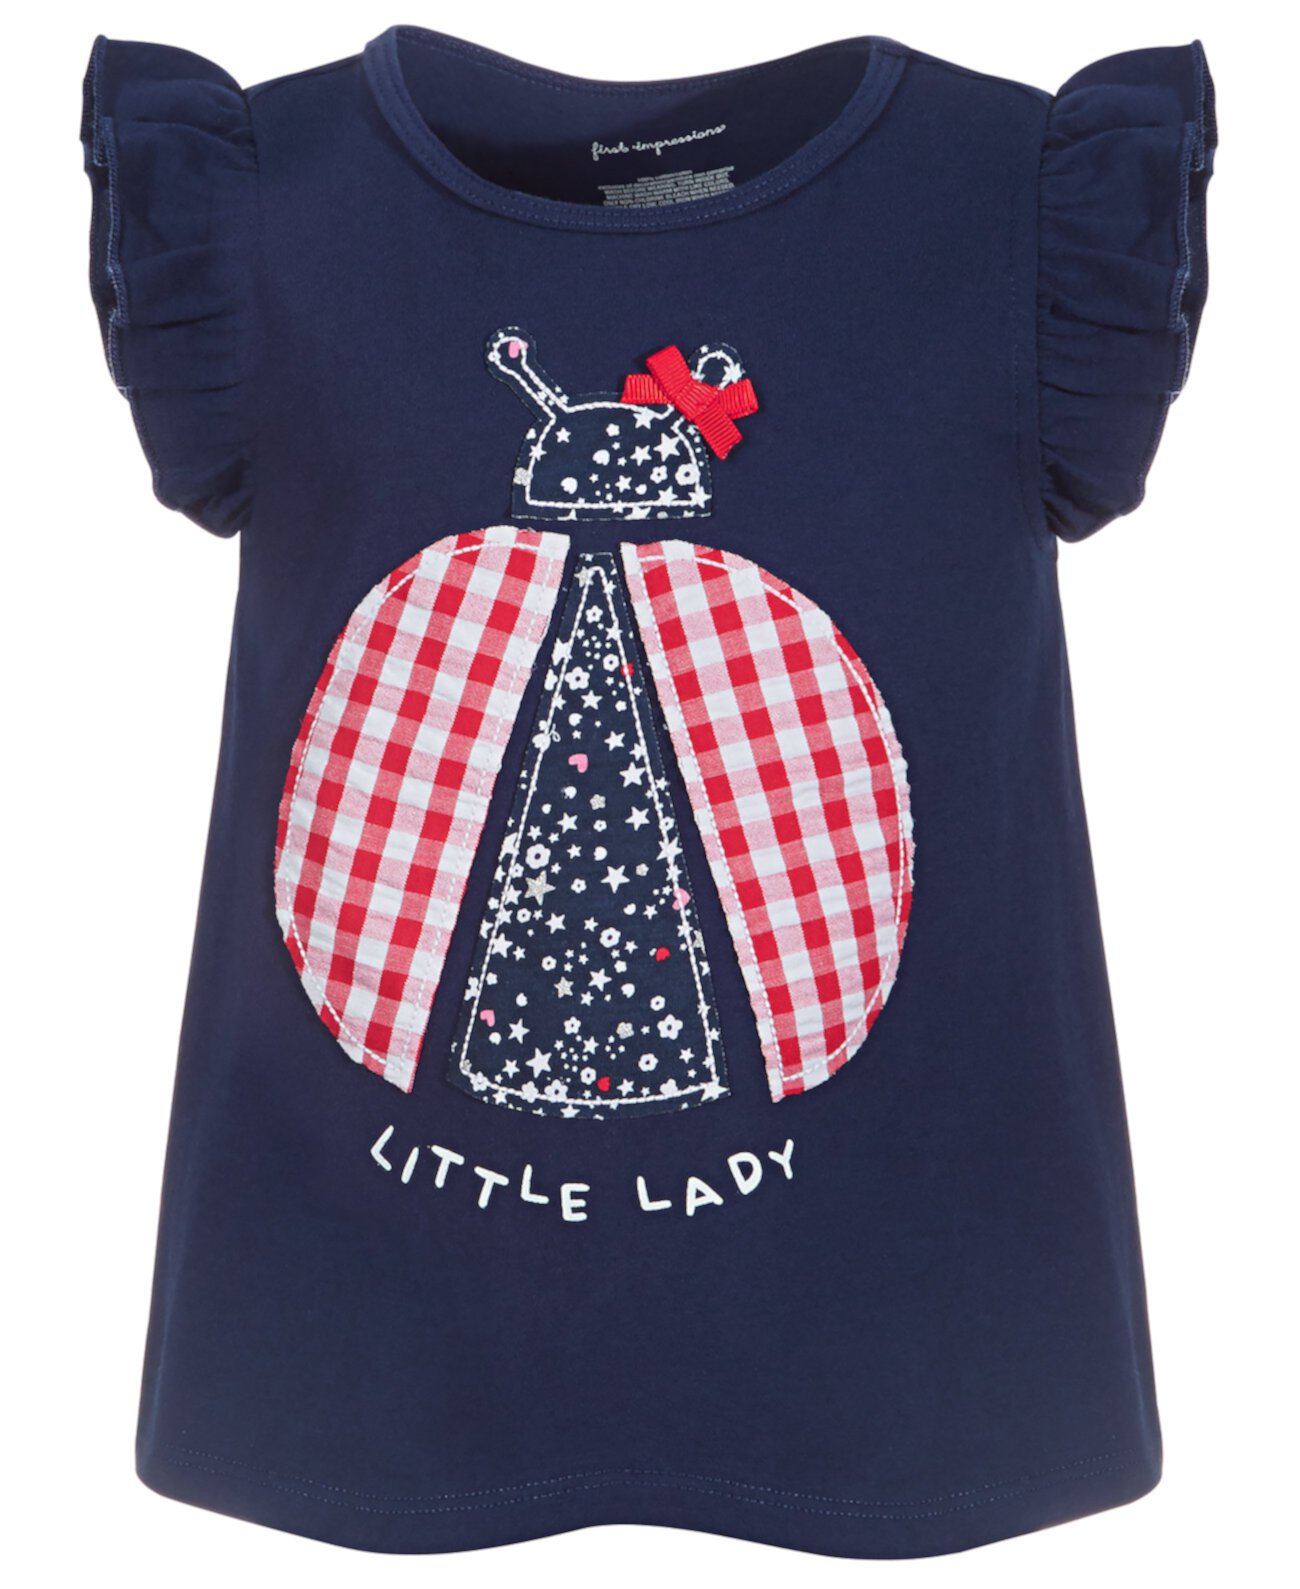 Хлопковая туника для маленьких девочек Little Lady, созданная для Macy's First Impressions